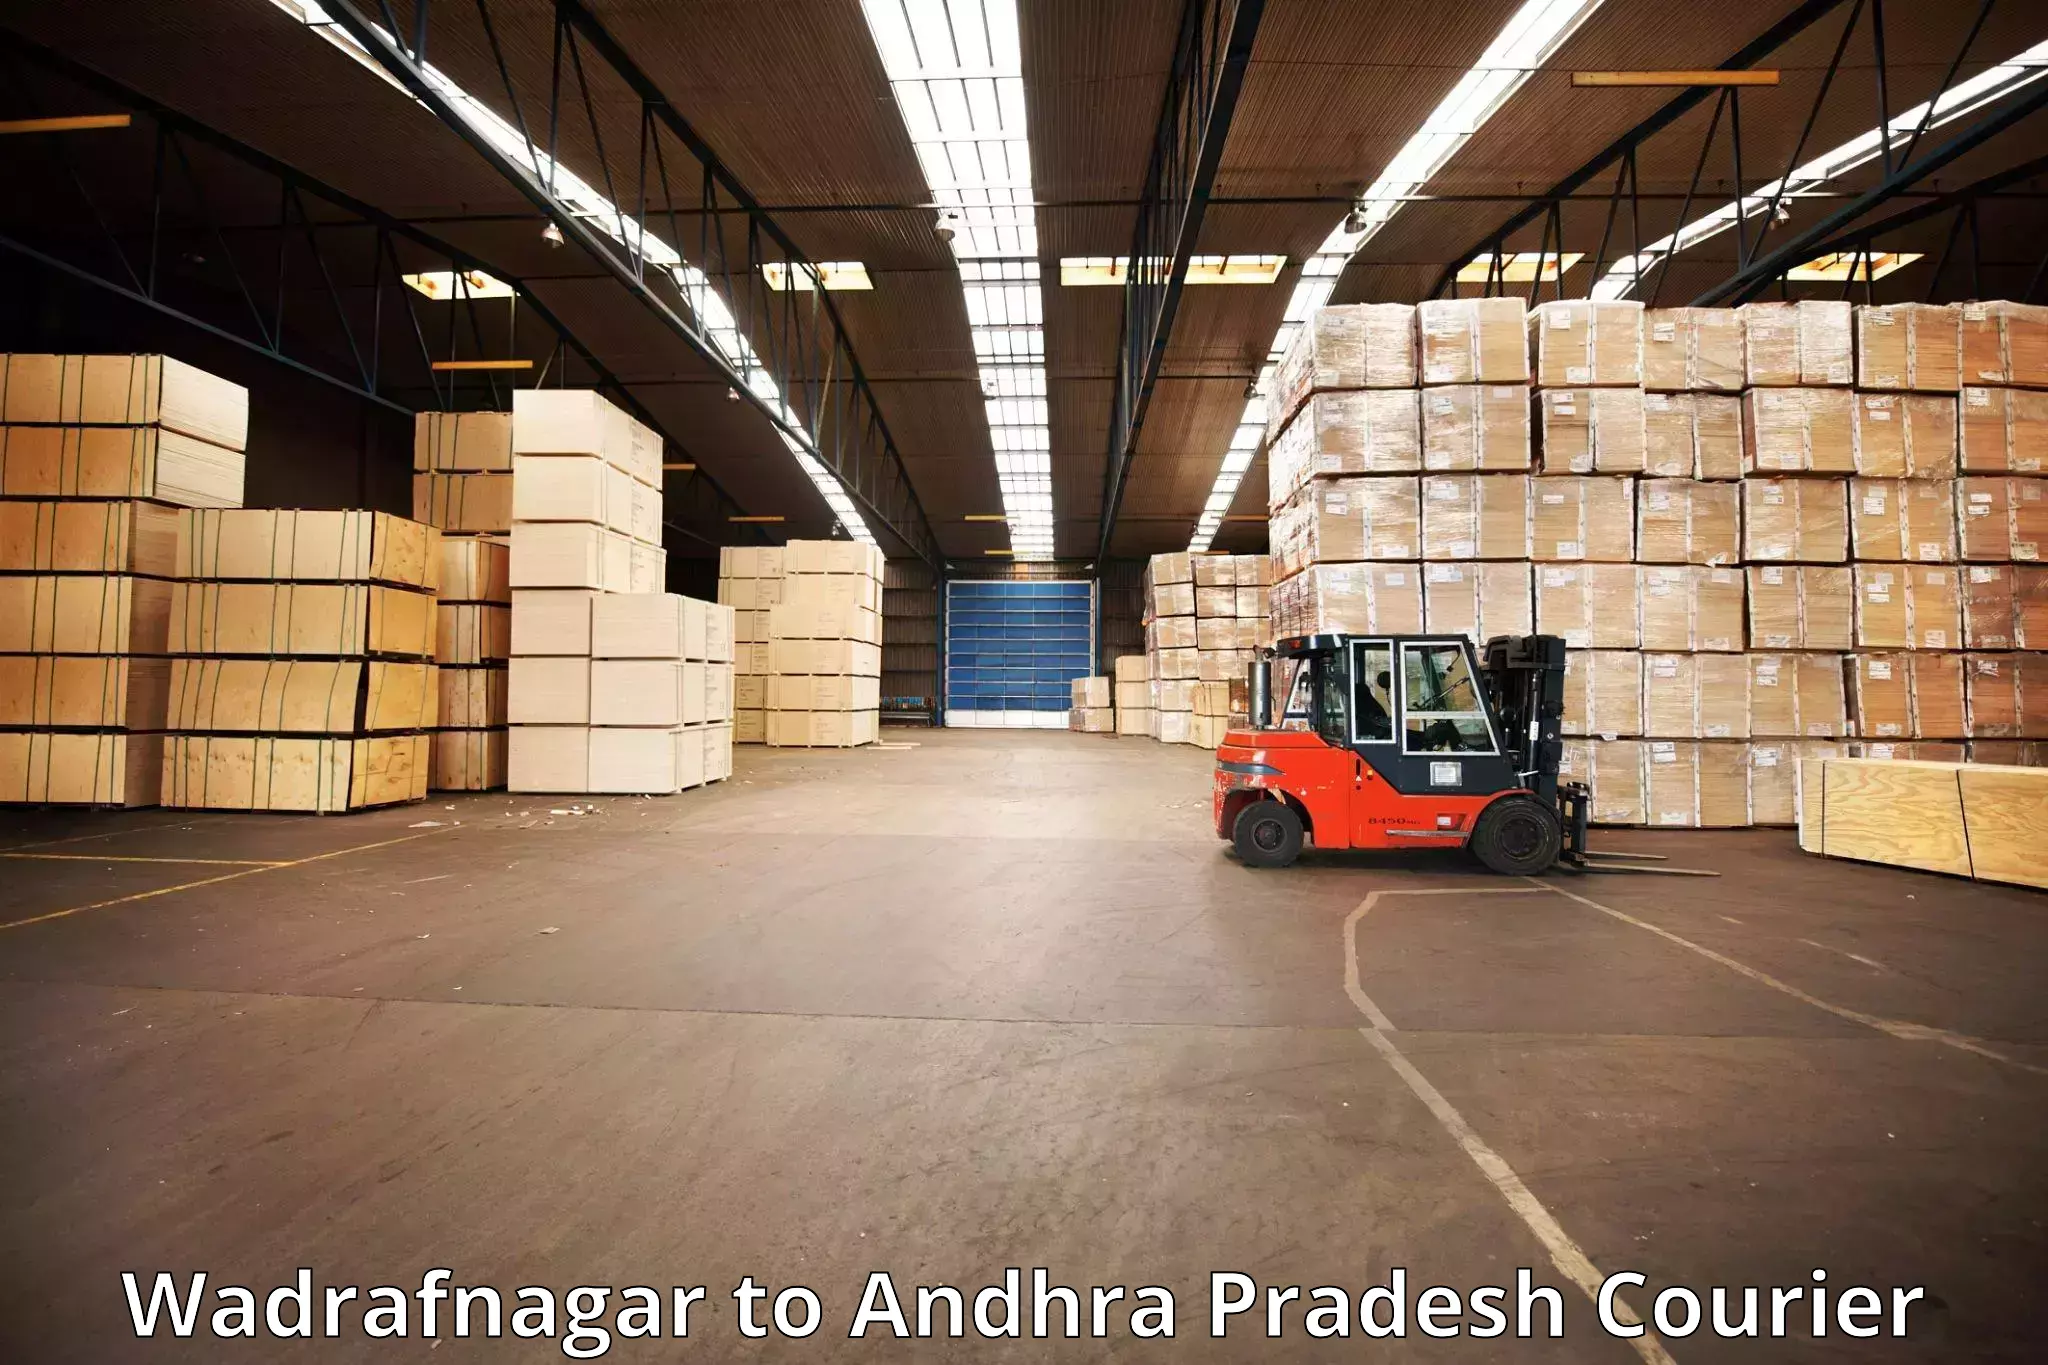 Luggage transport company Wadrafnagar to Sirvella